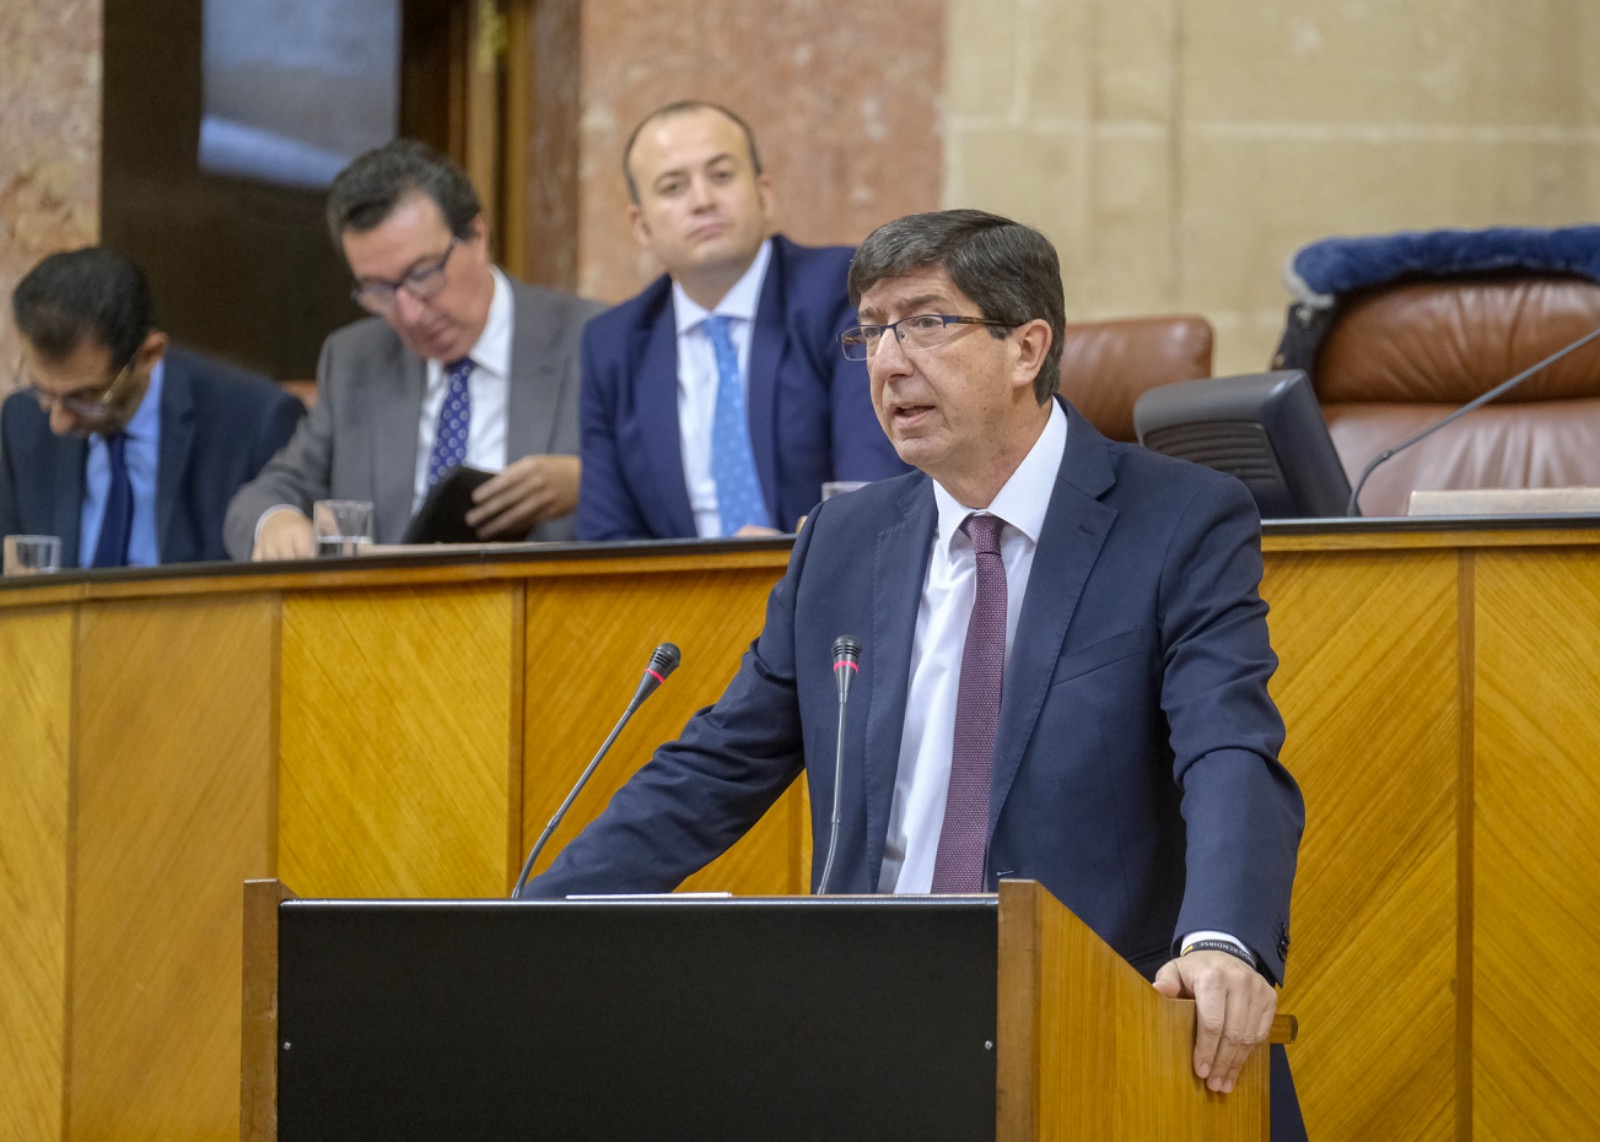  El presidente del Grupo parlamentario Ciudadanos, Juan Marn, interviene en el debate de investidura de Juan Manuel Moreno